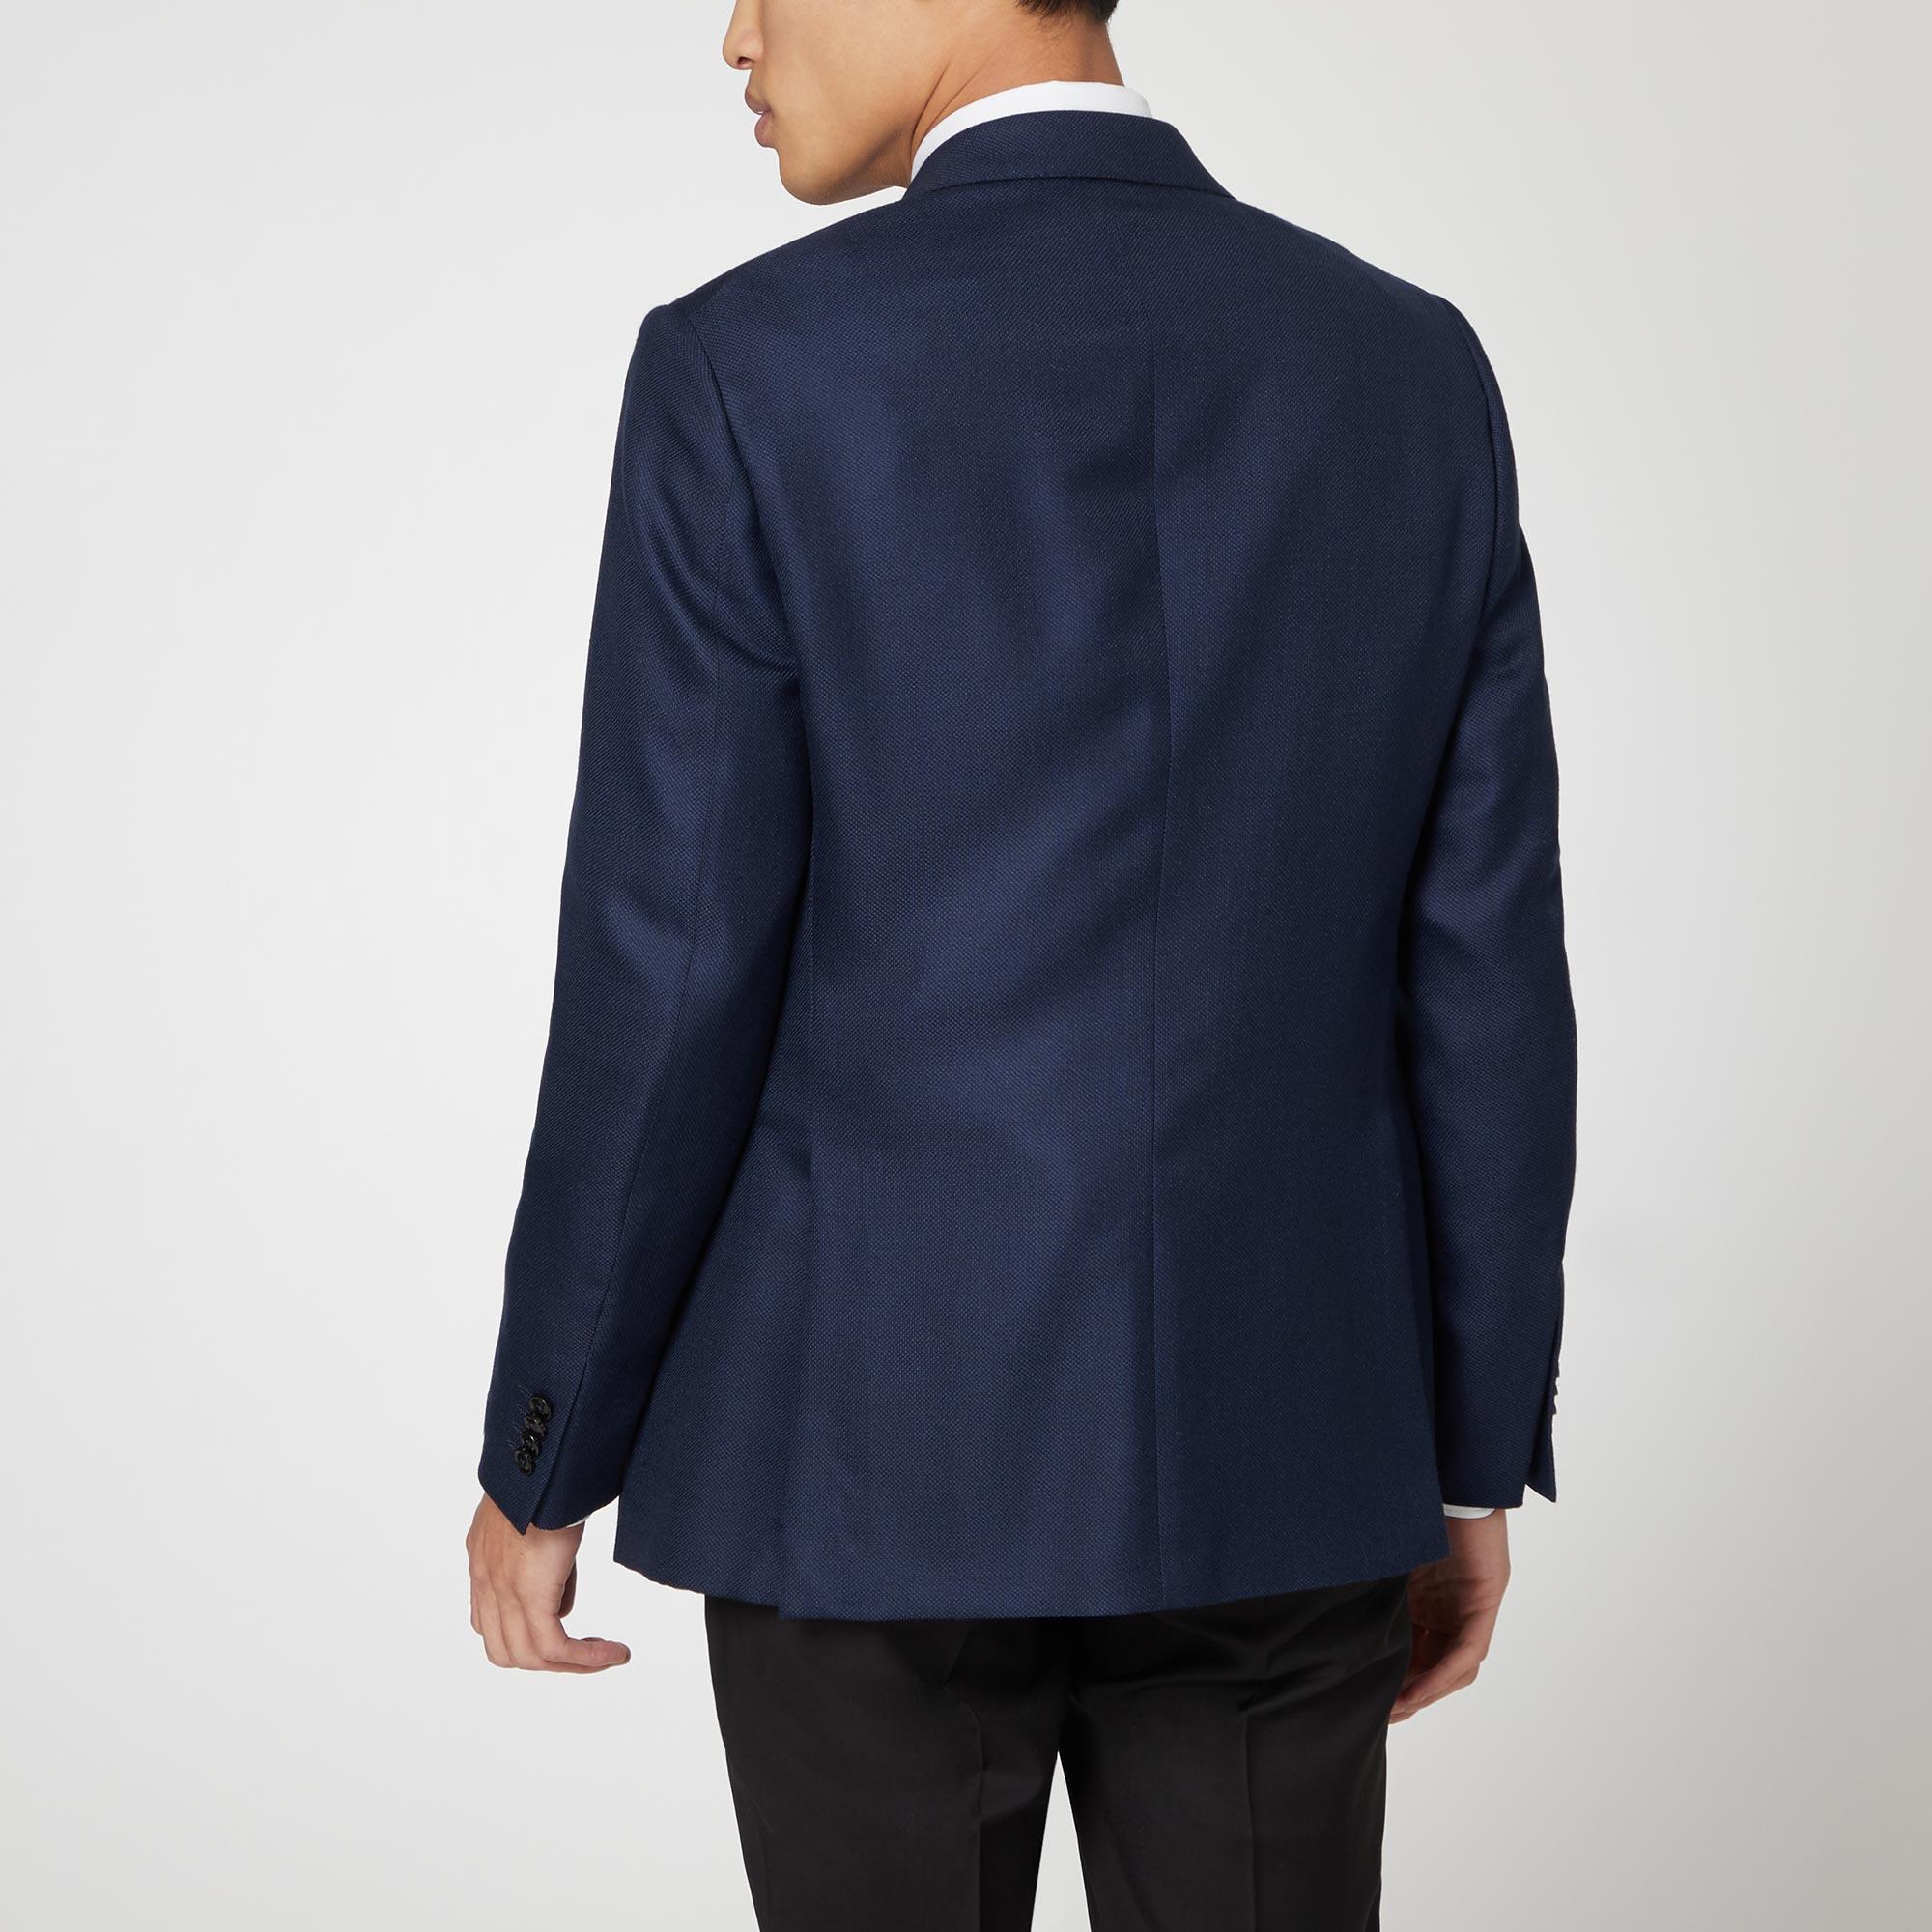 Textured Suit: Jacket